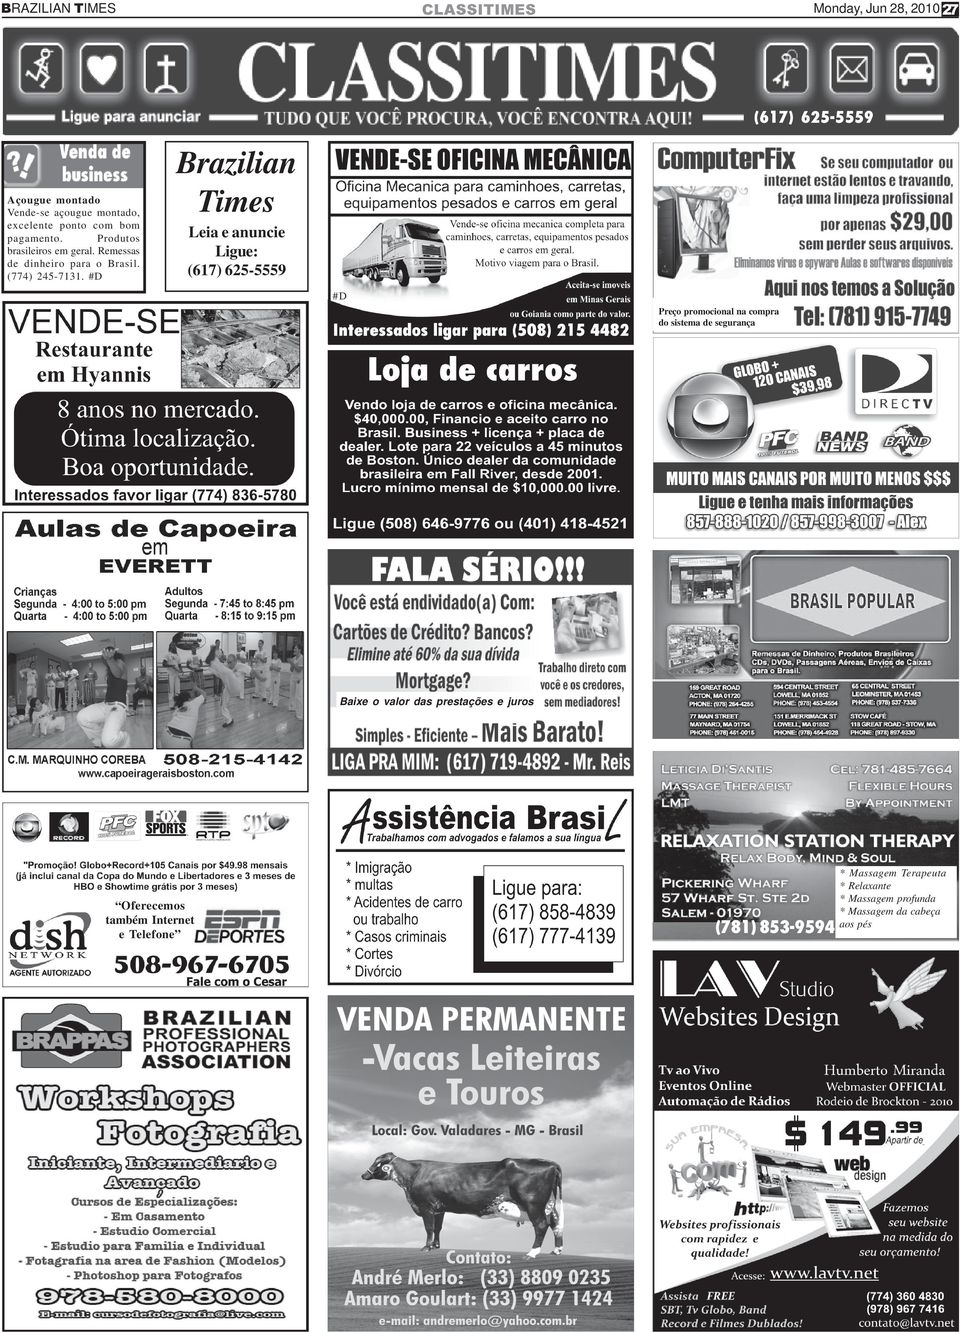 #D Brazilian Times Leia e anuncie Ligue: #D Preço promocional na compra do sistema de segurança Baixe o valor